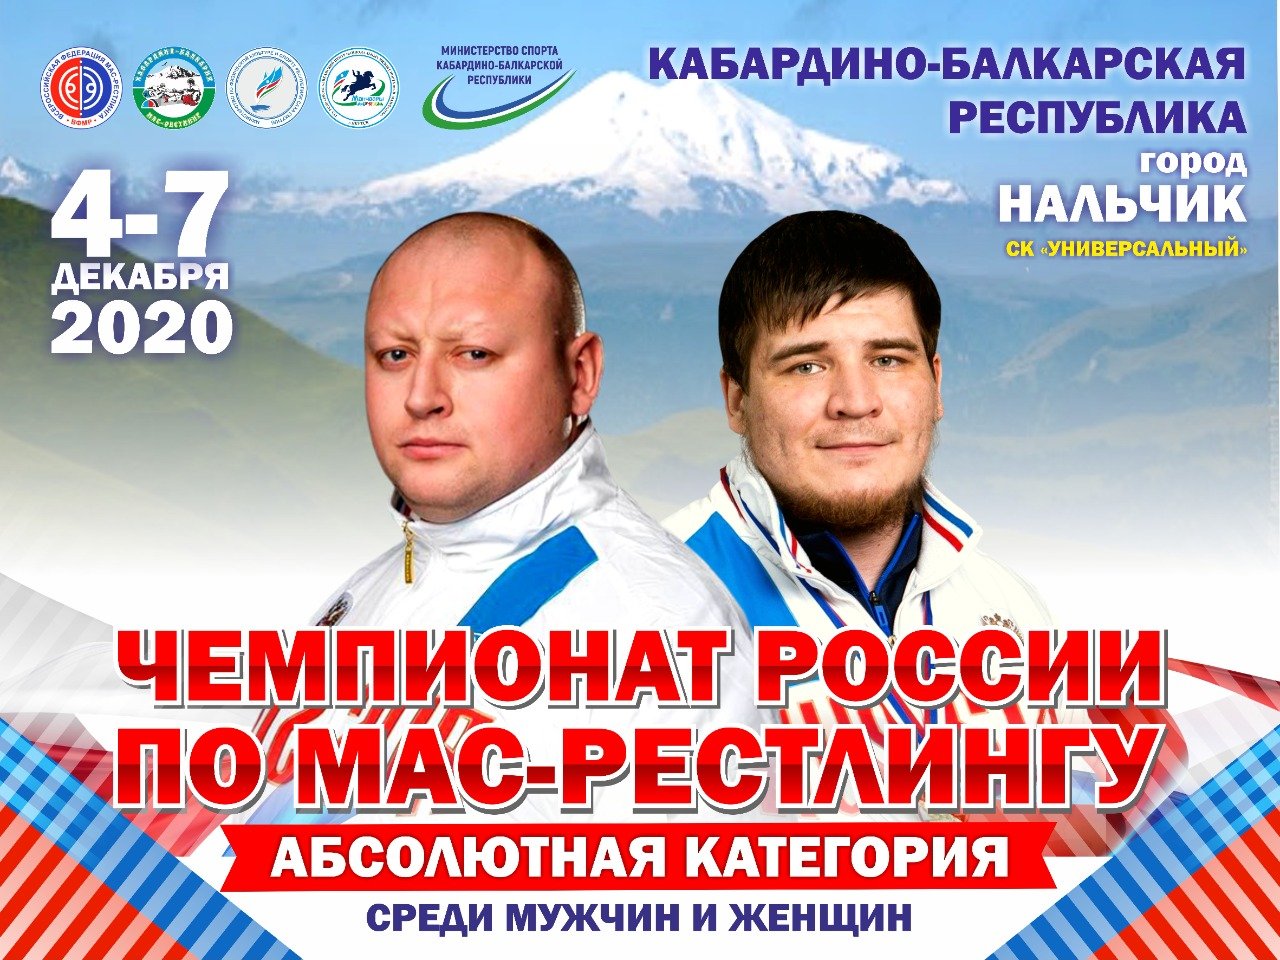 Программа проведения чемпионатов России по мас-рестлингу